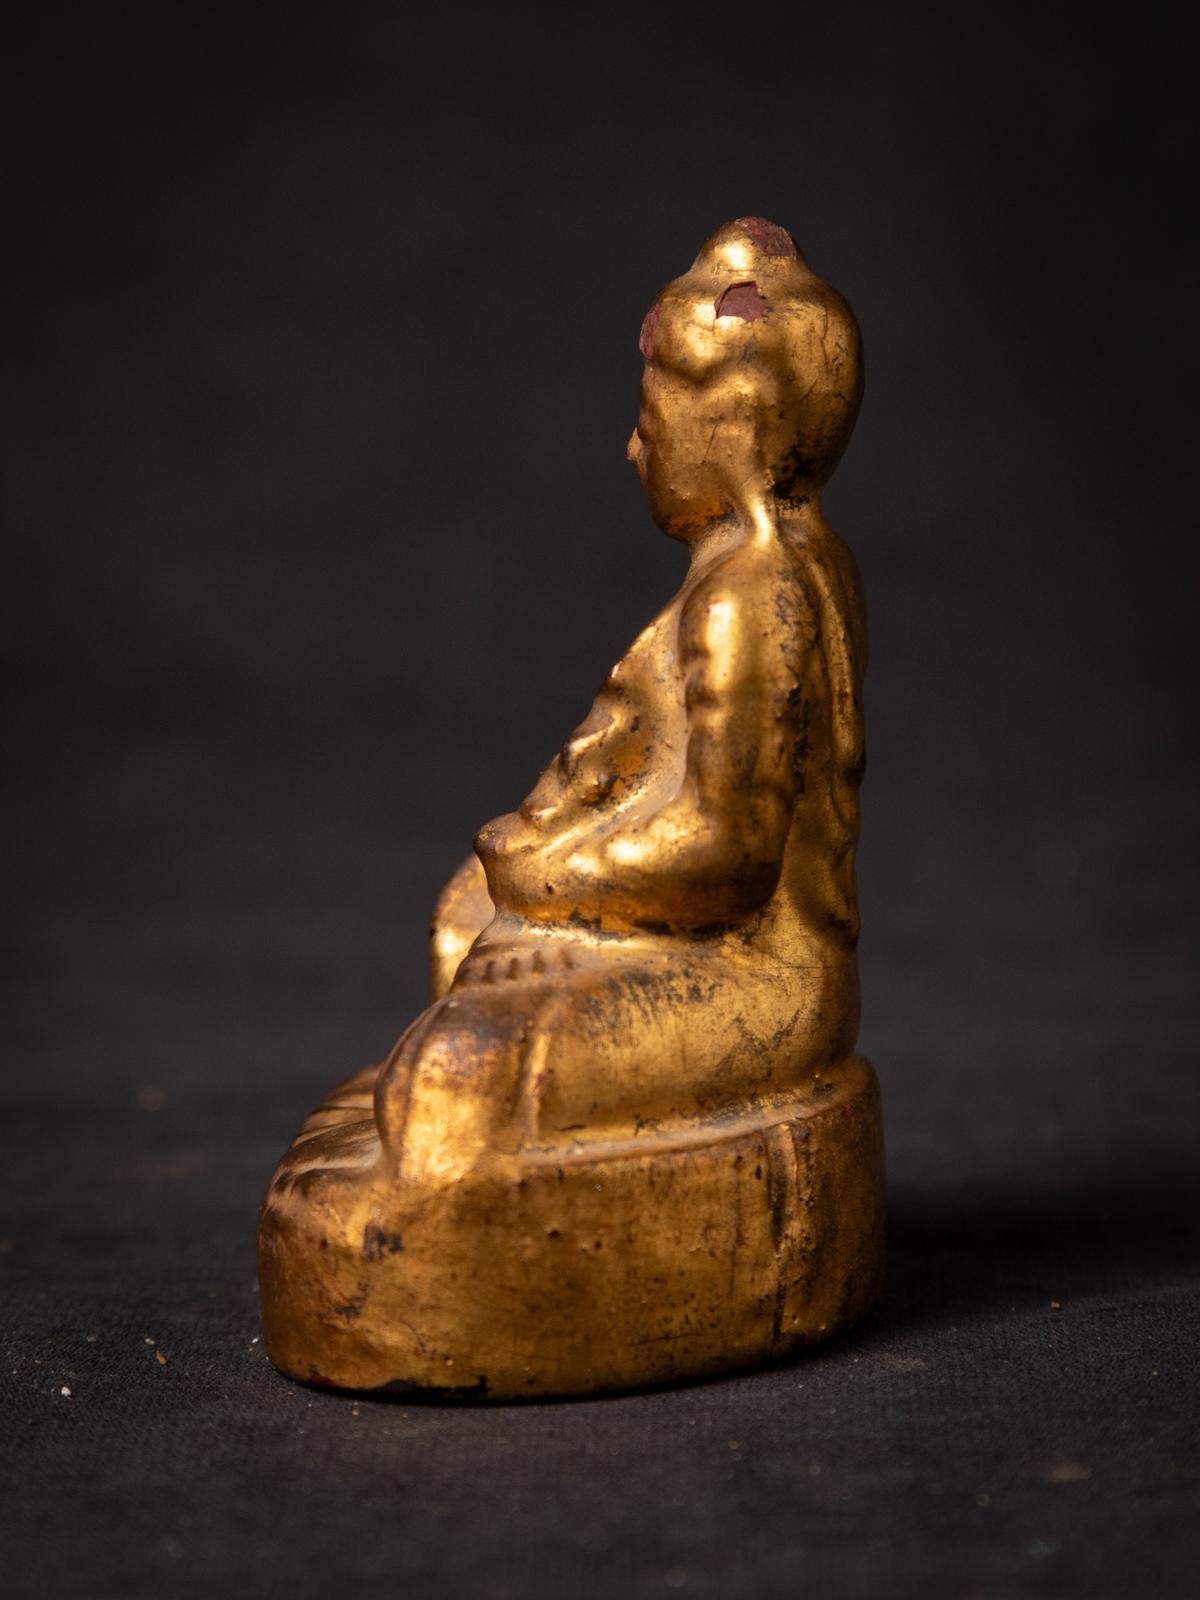 Antiker burmesischer Buddha aus Holz
MATERIAL : Holz
8,6 cm hoch
6,5 cm breit und 4,9 cm tief
Vergoldet mit 24 krt. Gold
Mandalay-Stil
Bhumisparsha Mudra
19. Jahrhundert
Gewicht: 59 Gramm
Mit Ursprung in Birma
Nr: 3827-10